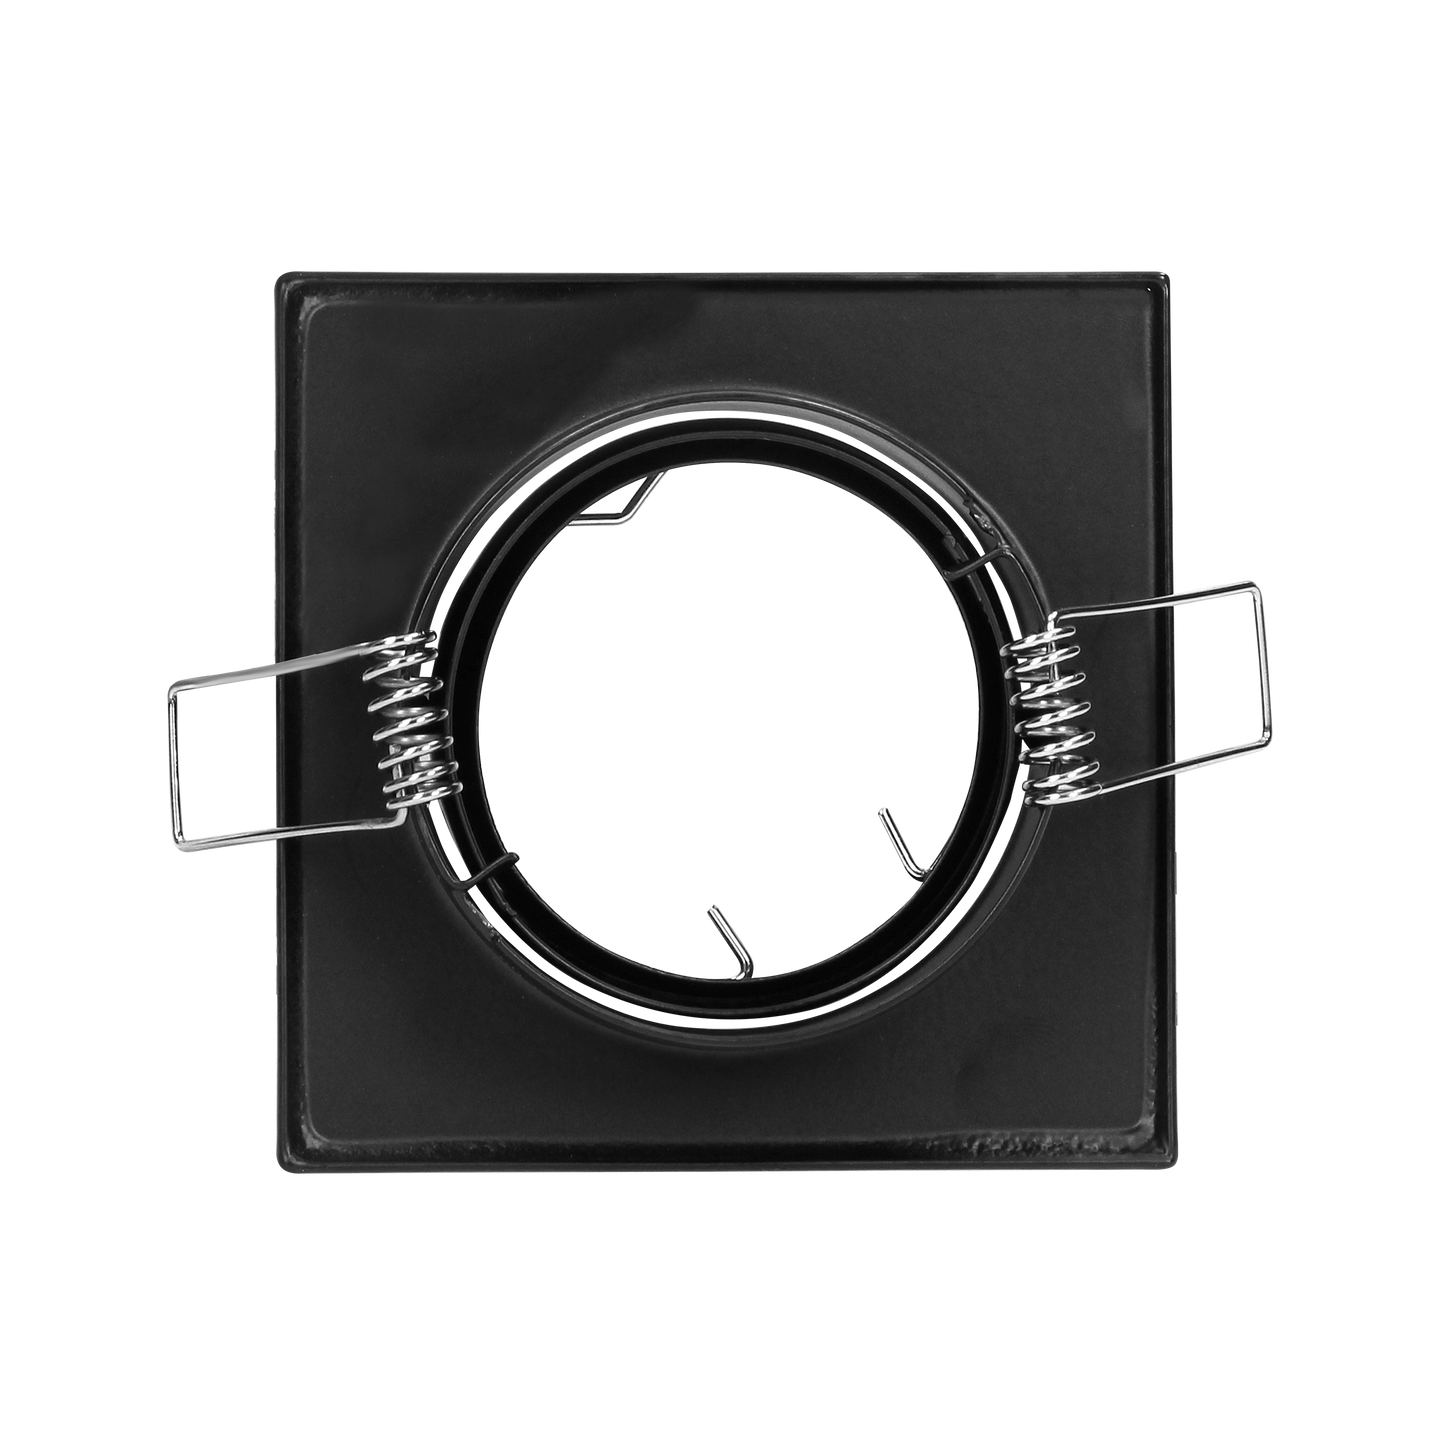 SUTRI RM dekorativer Spot-Rahmen, MR16/GU10 max 50W, quadratisch, verstellbar, schwarz